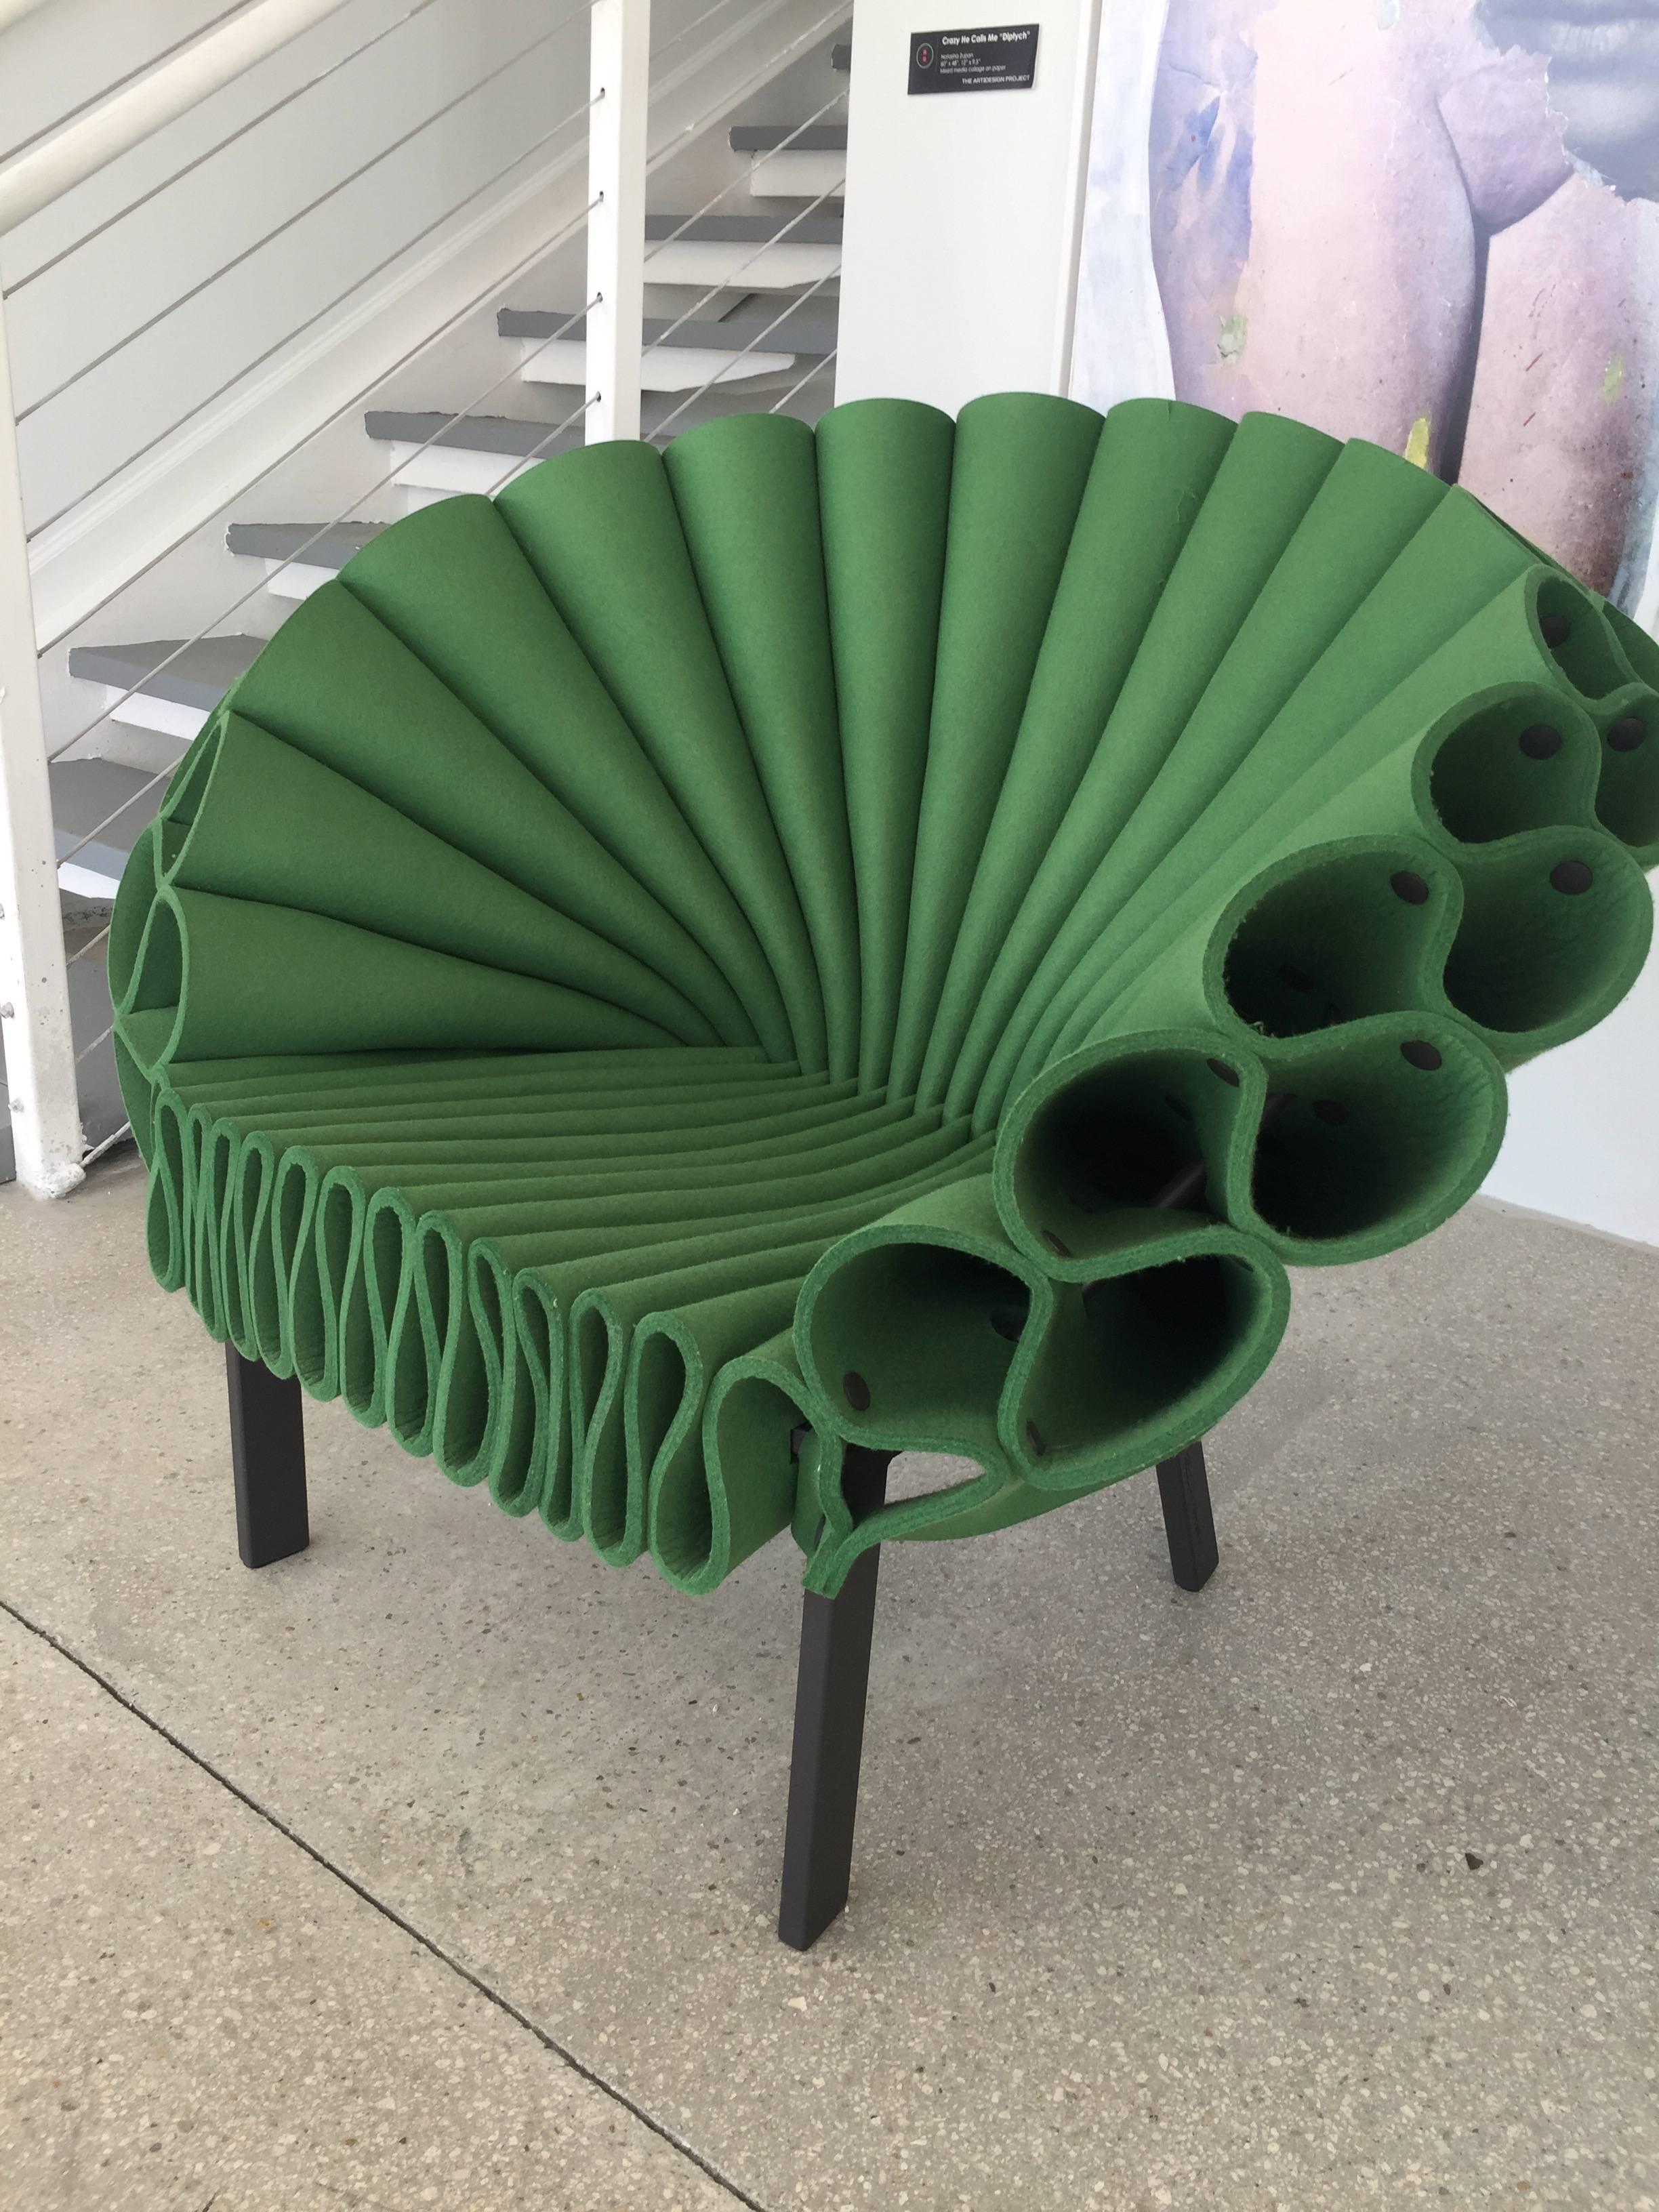 Italian Peacock Chair Designed by Dror Benshetrit for Cappellini, Green